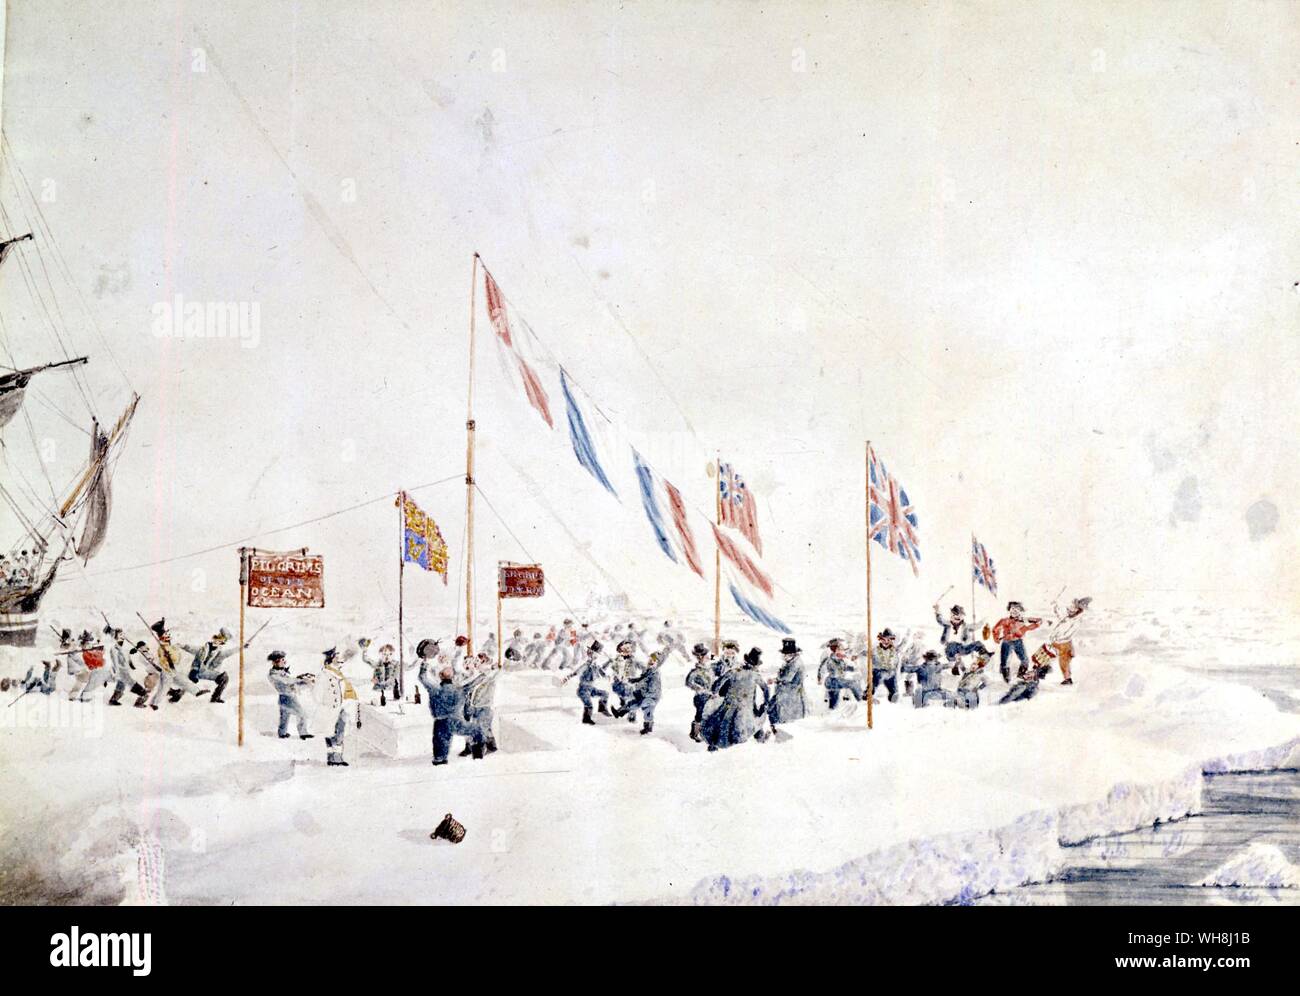 Celebrando el Día de Año Nuevo de 1842, en los témpanos de hielo en latitud 66 grados 32 minutos S, longitud 156 grados 28 min W, por John Edward Davis (1815-77). Desde la Antártida: el último continente por Ian Cameron, página 100. Foto de stock